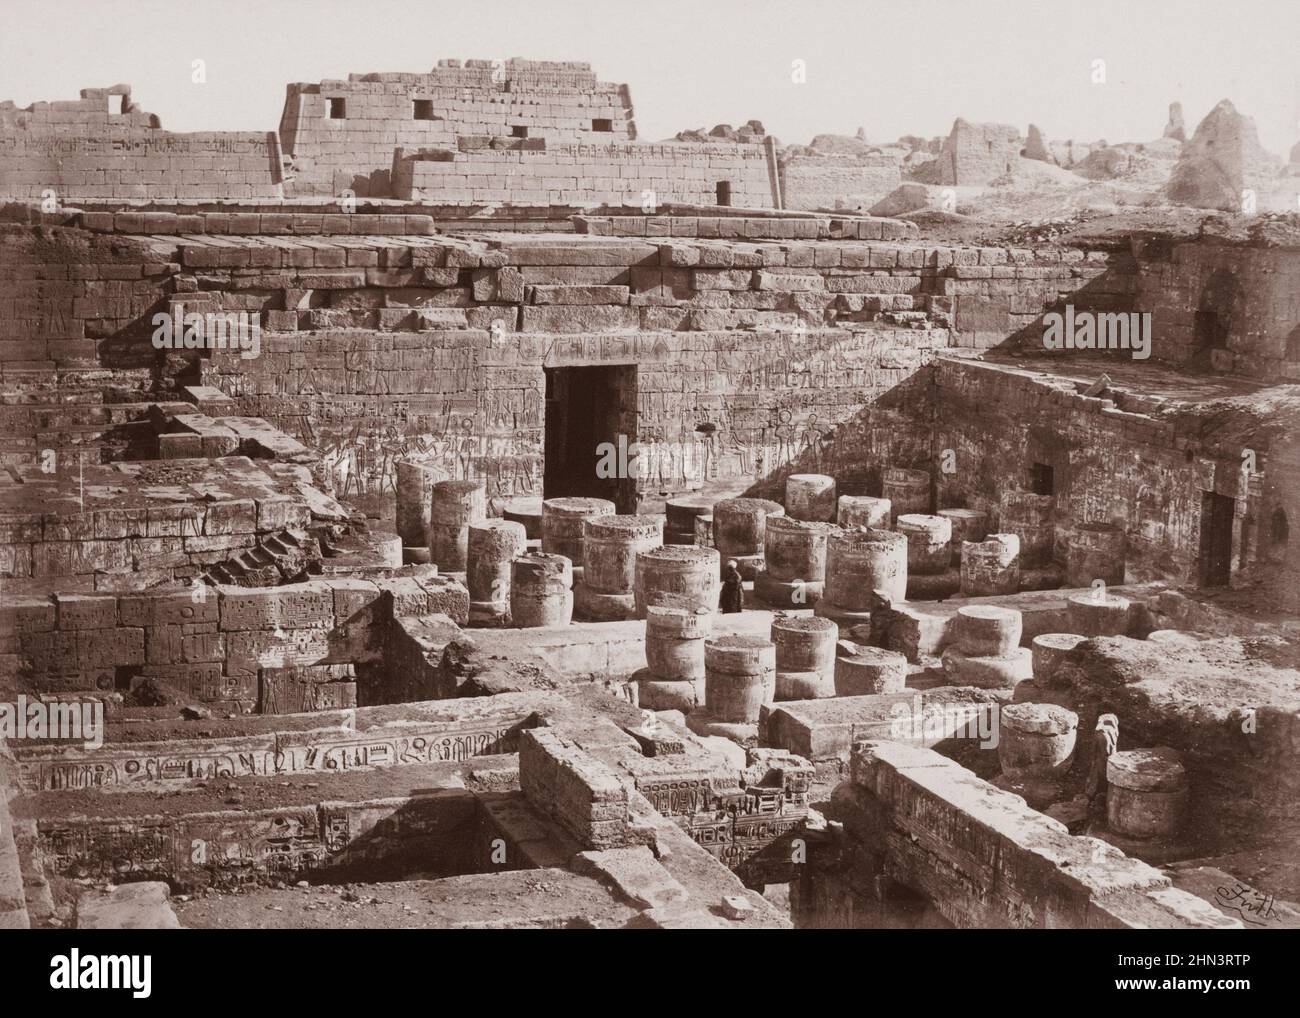 Photo d'époque de l'intérieur du Temple de Medinet Habu (Temple de Ramesses III). Thèbes. Égypte. Par Francis Frith. 1850s Banque D'Images